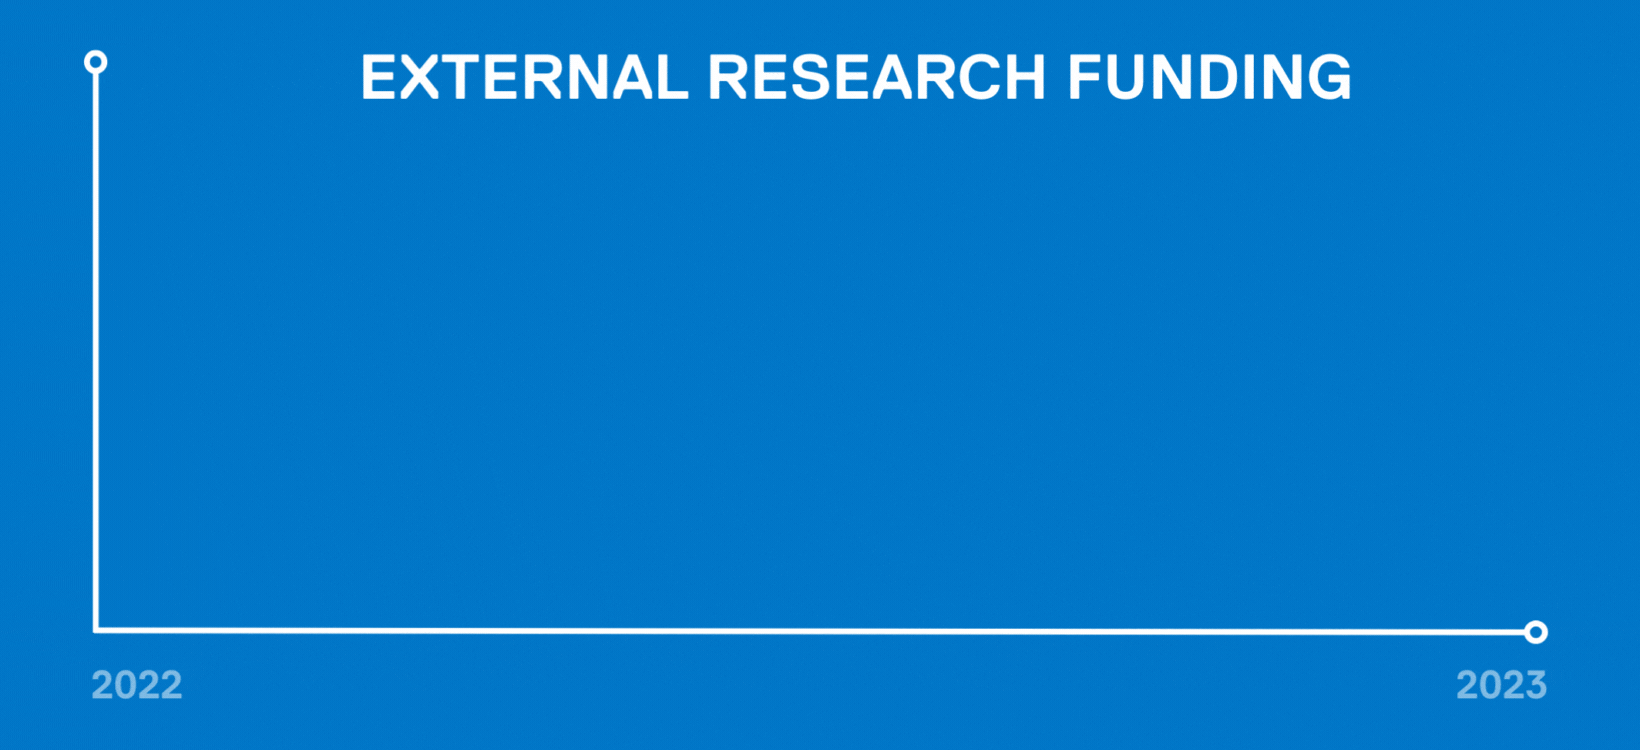 External research funding